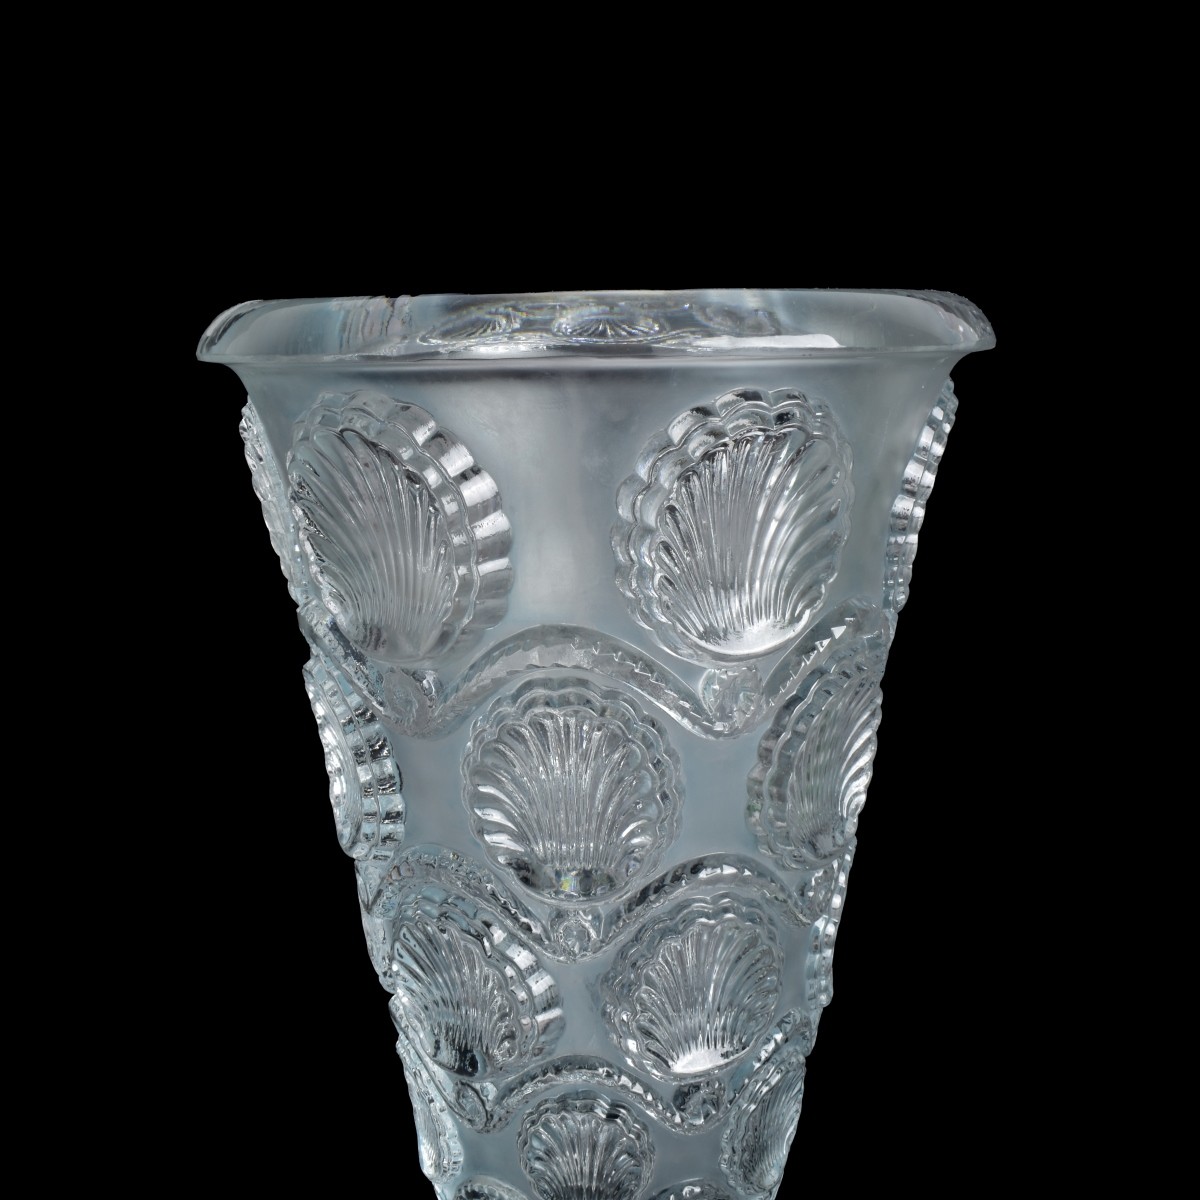 Rene Lalique "Cancale" Vase